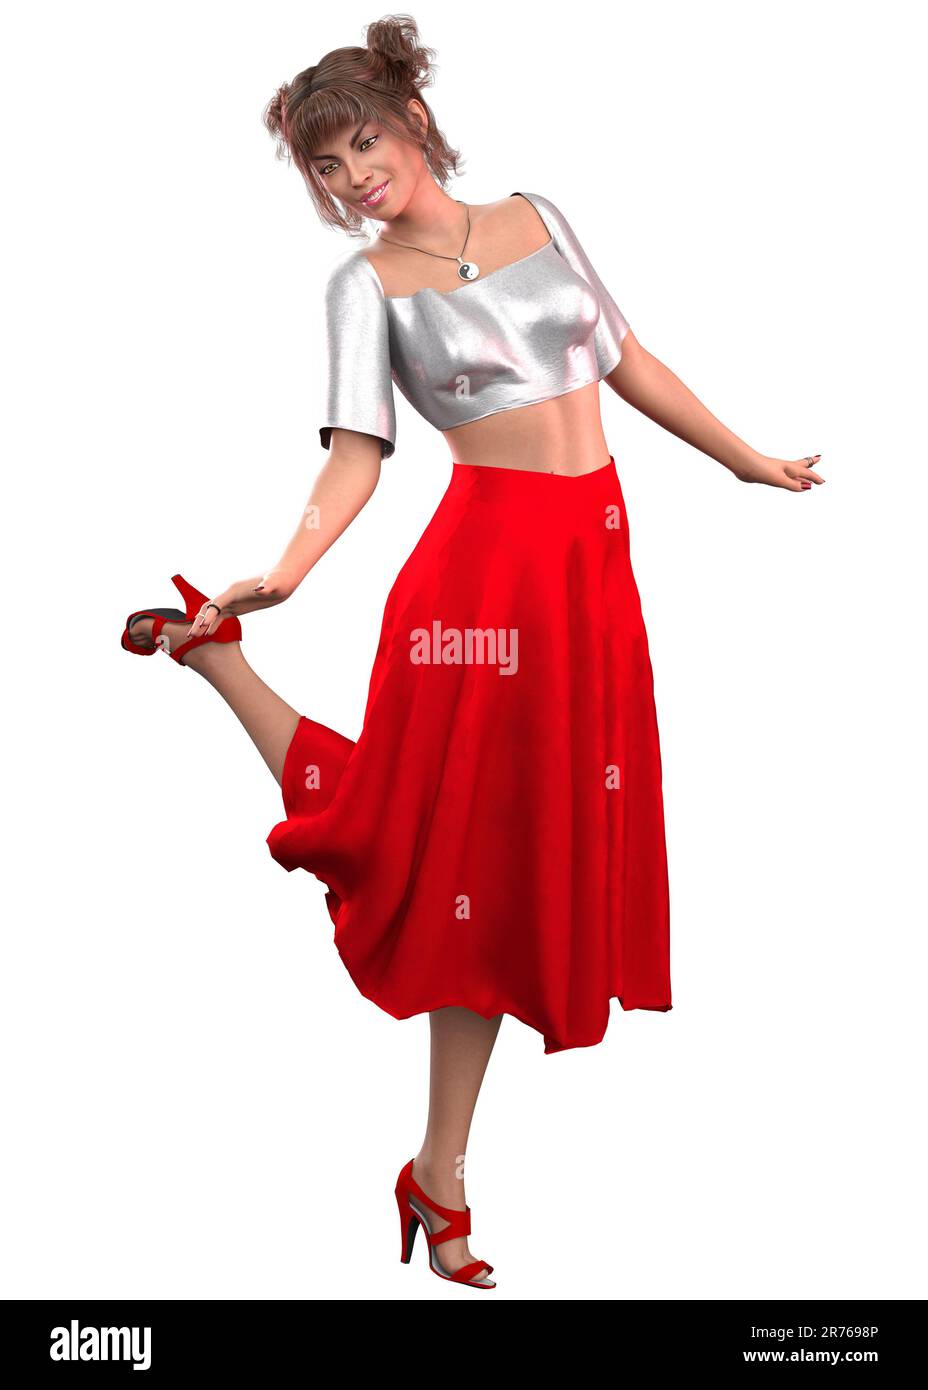 Foto Una mujer con falda roja posa para una foto – Imagen Cuerpo de mujer  gratis en Unsplash